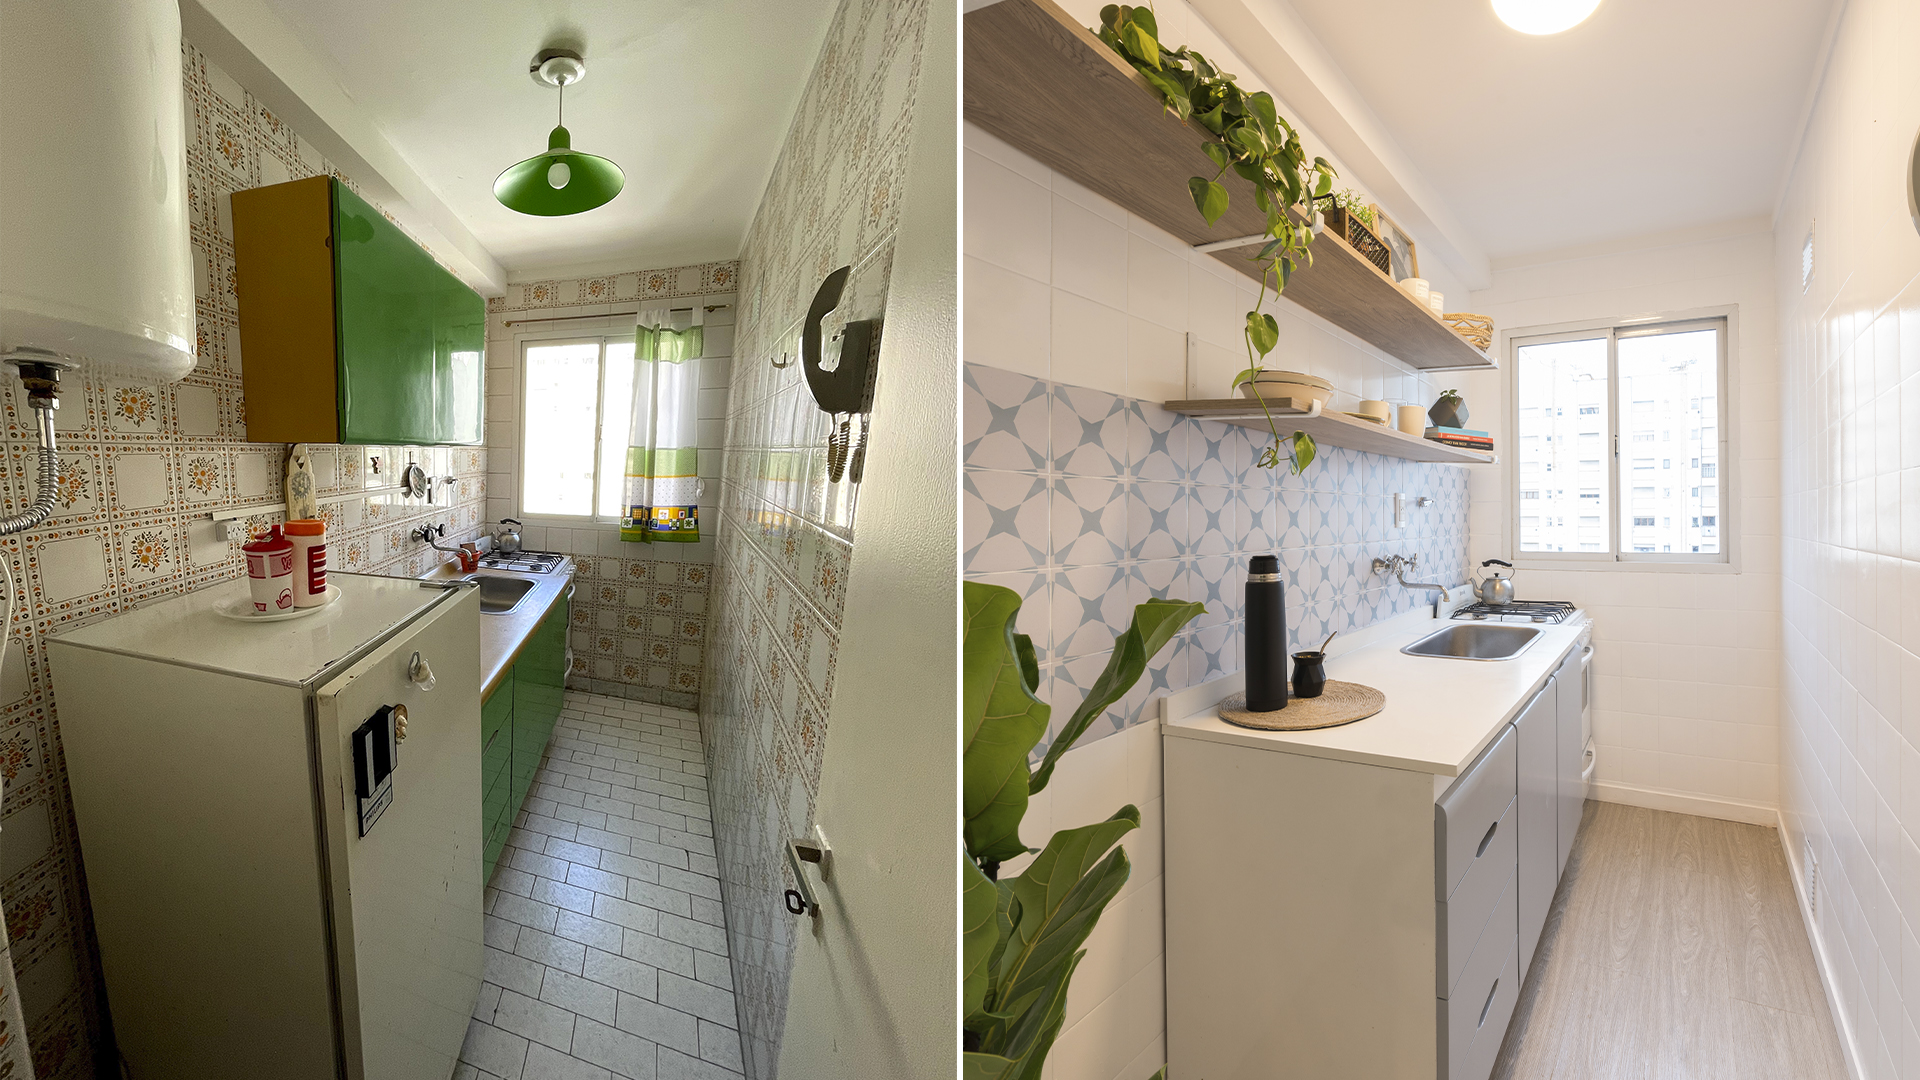 Una cocina, el antes y después. Allí se observa como se aprovechó el espacio en el reciclaje y los tonos claros como aportan la sensación de mayor amplitud (Gentileza: Decoexpertas)